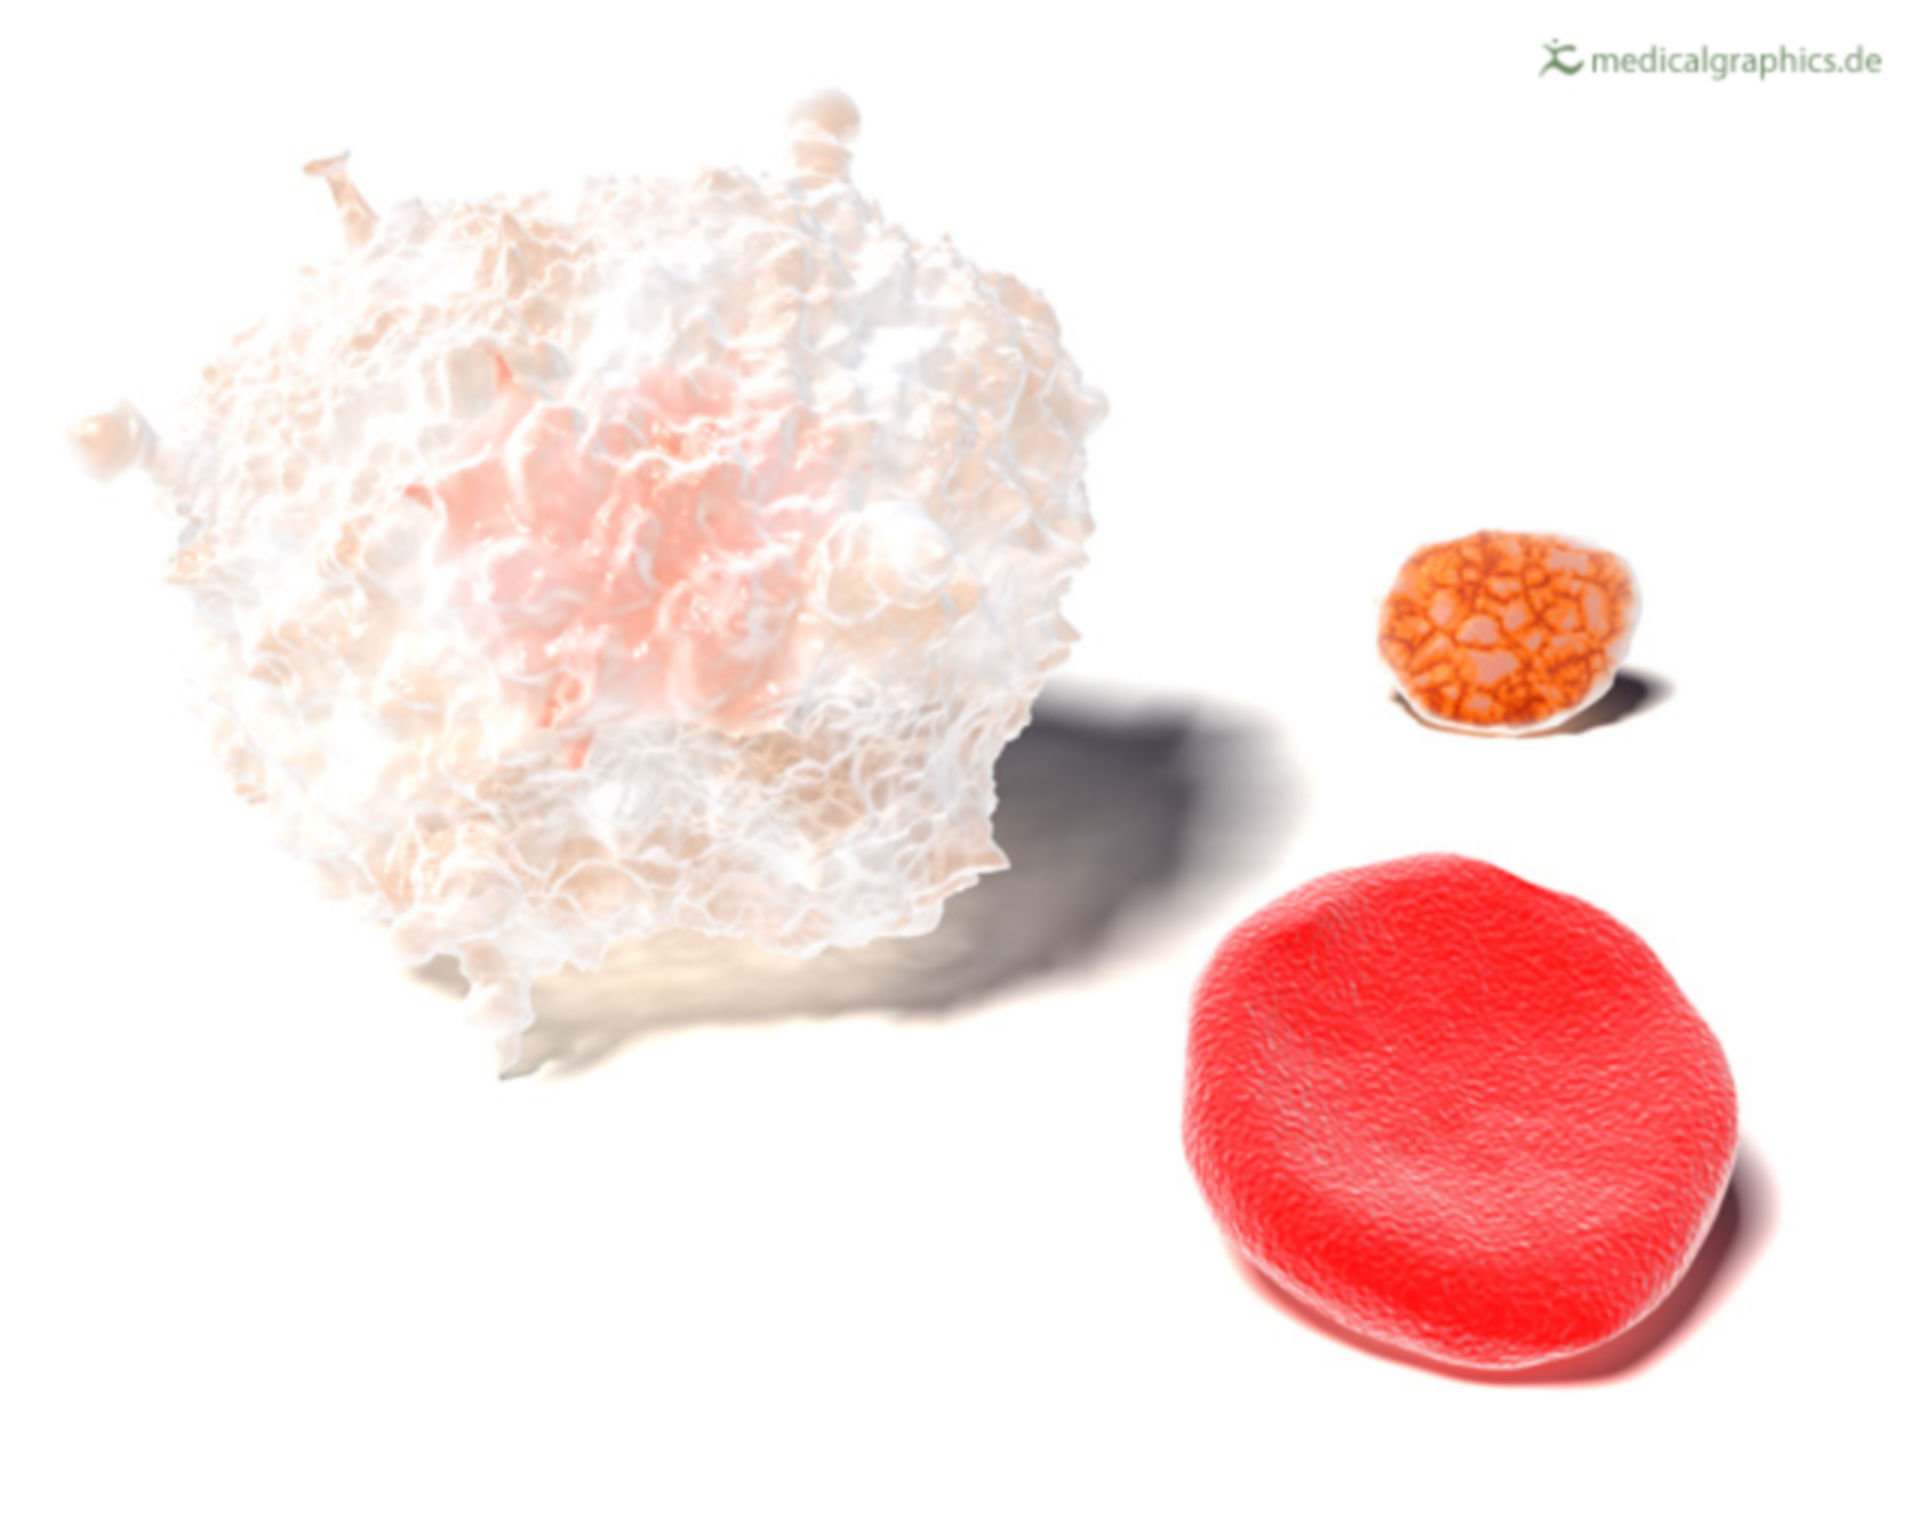 3 blood cells (illustration)